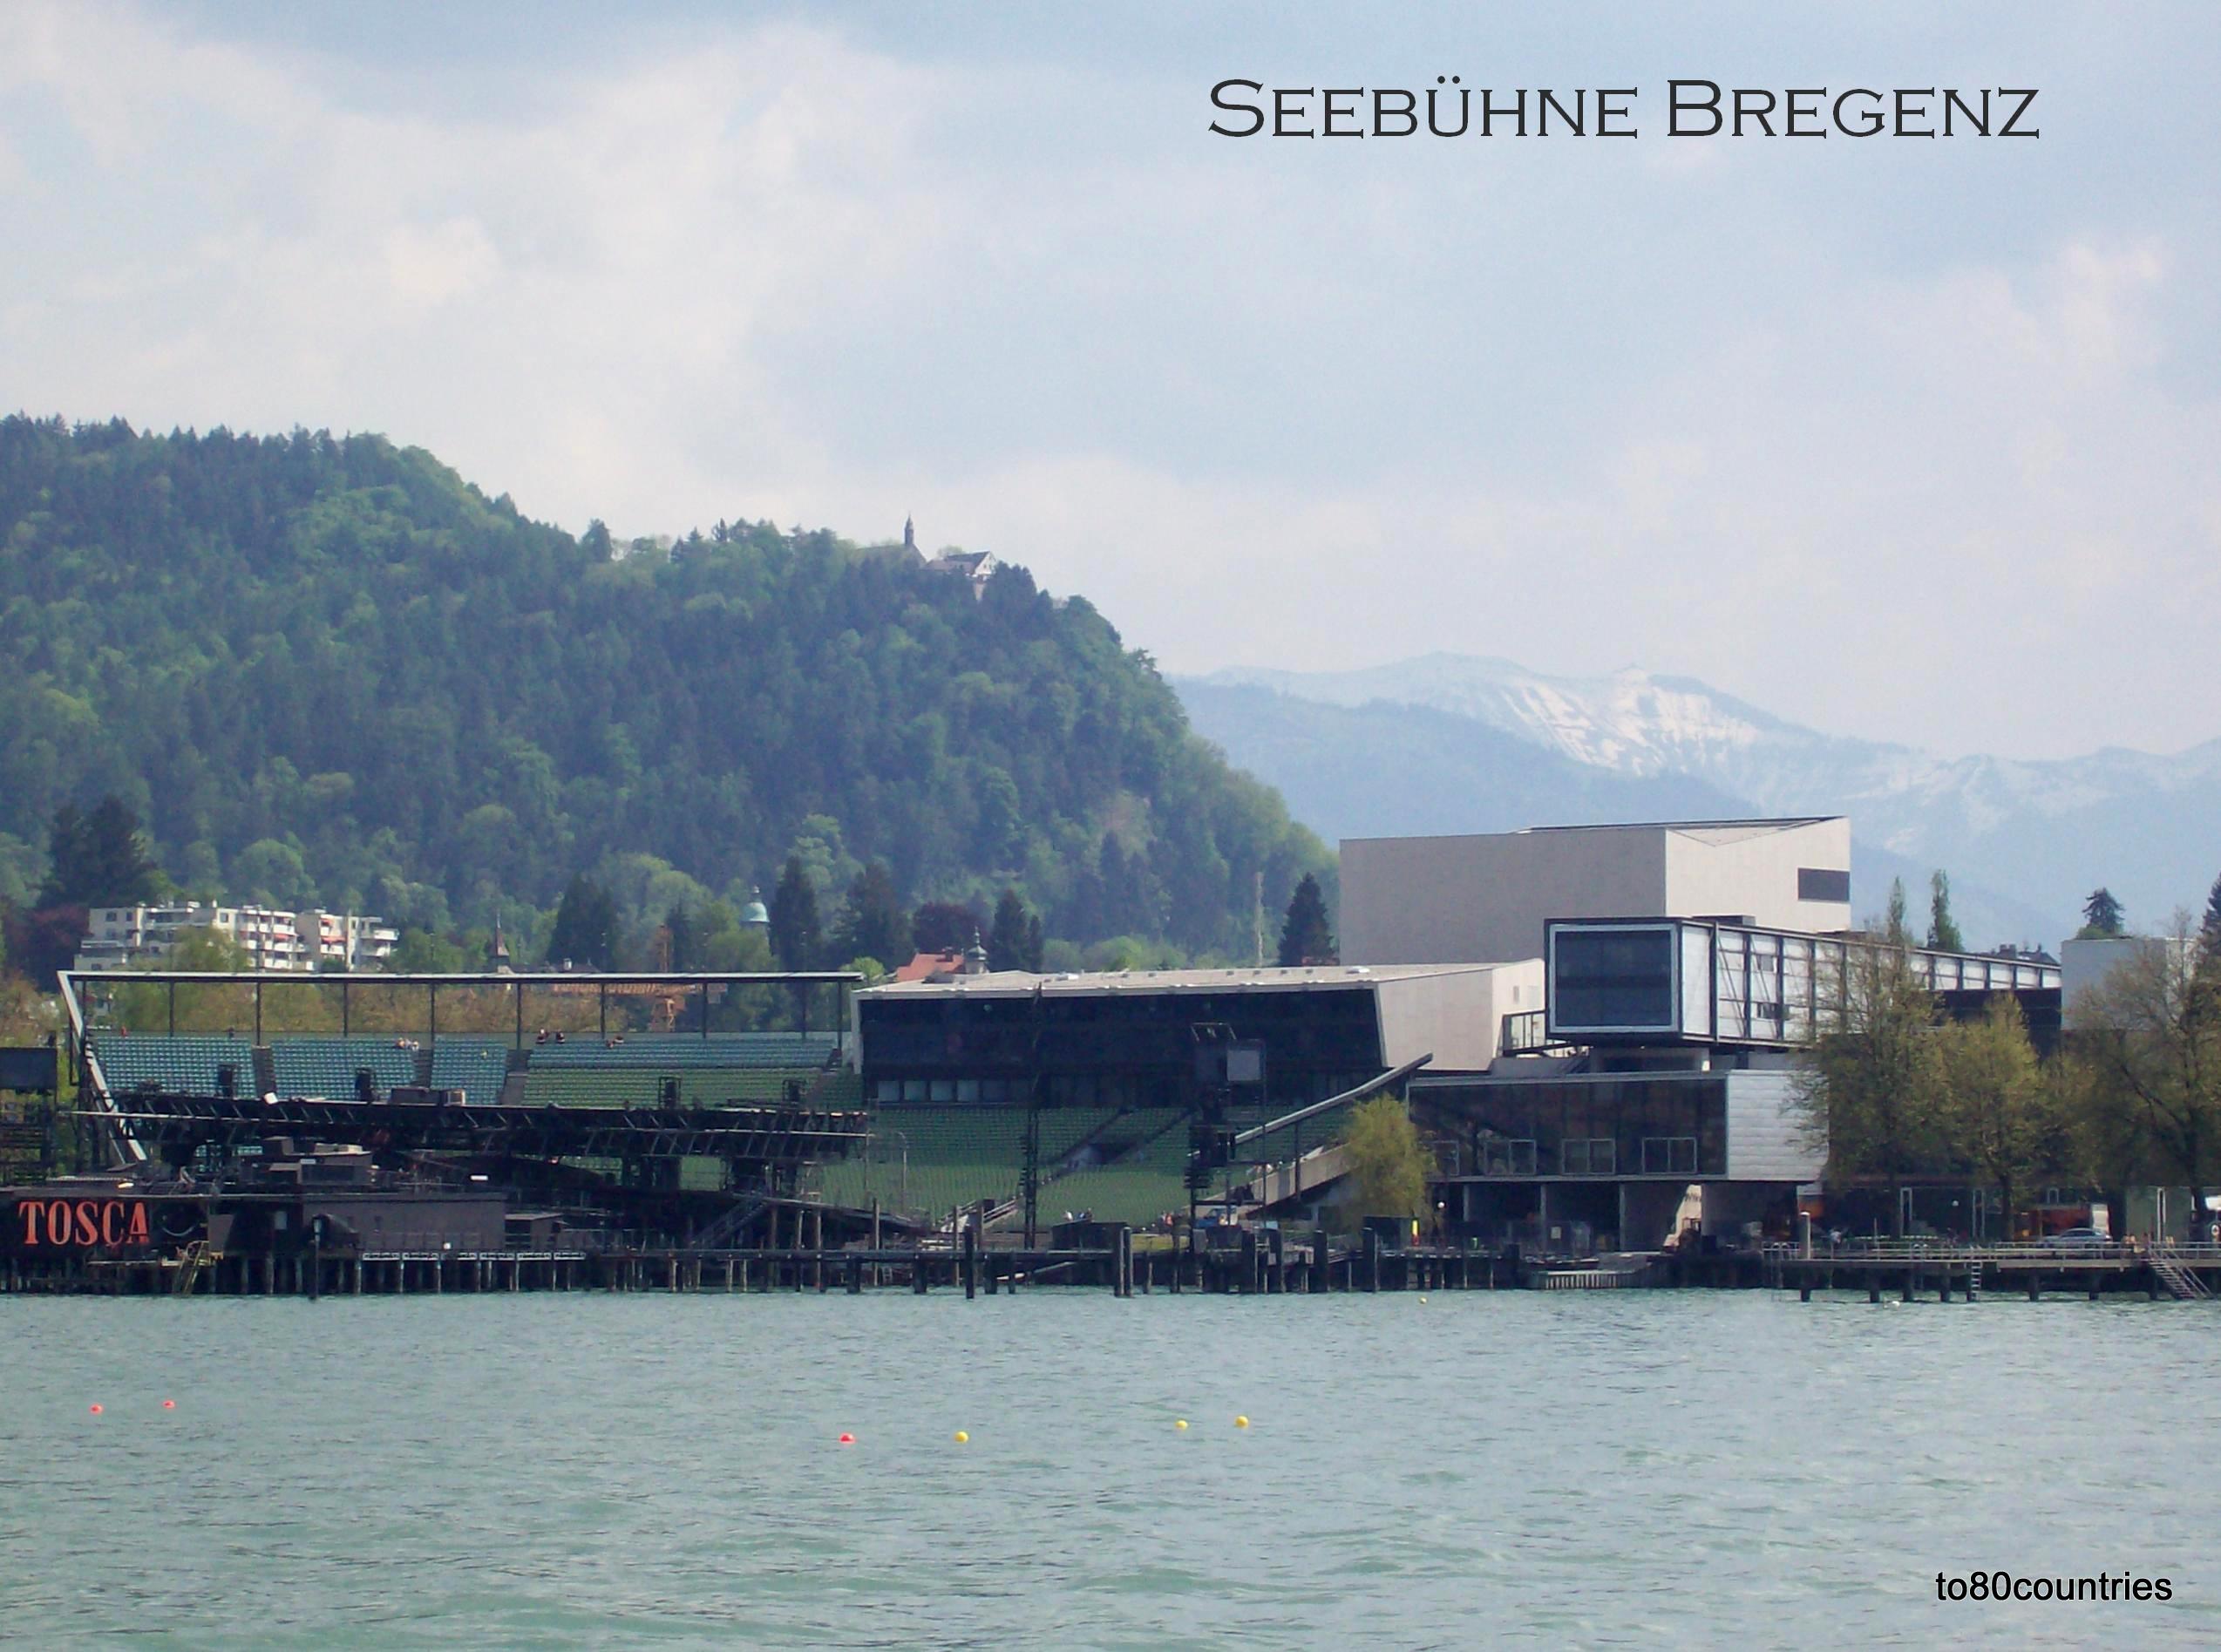 Seebühne Bregenz - am Bodensee